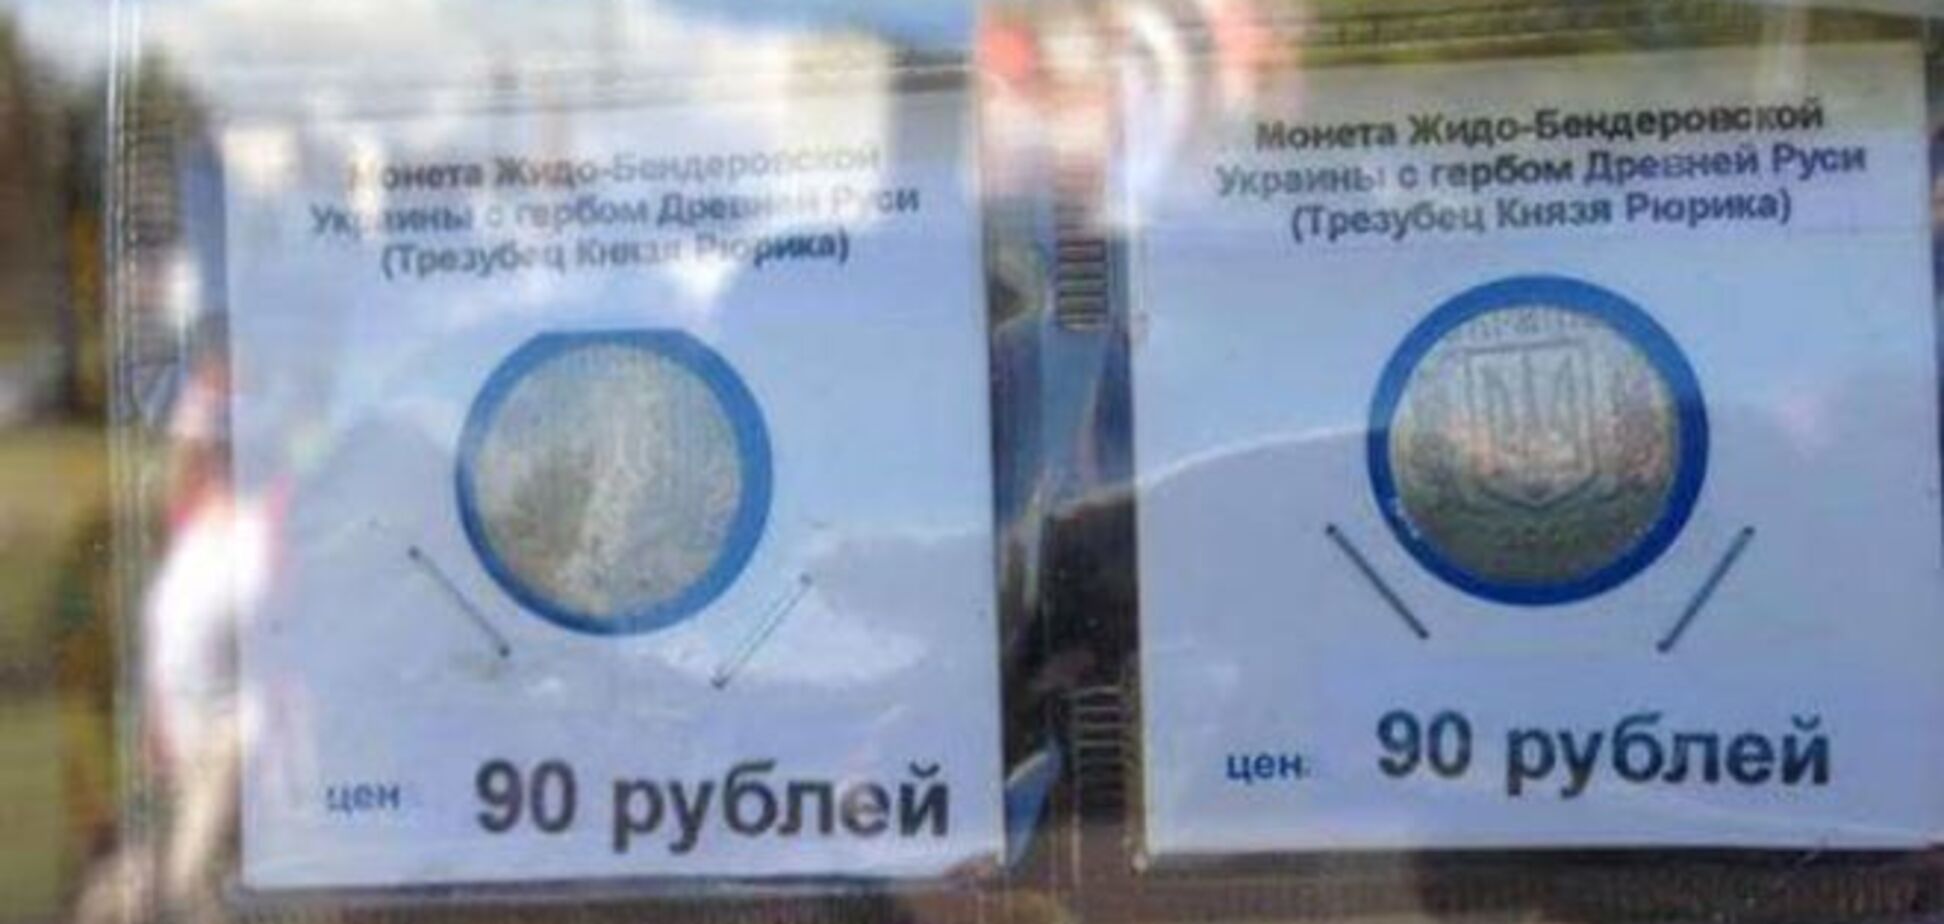 В России поступили в продажу 'монеты жидо-бендеровской Украины': фотофакт